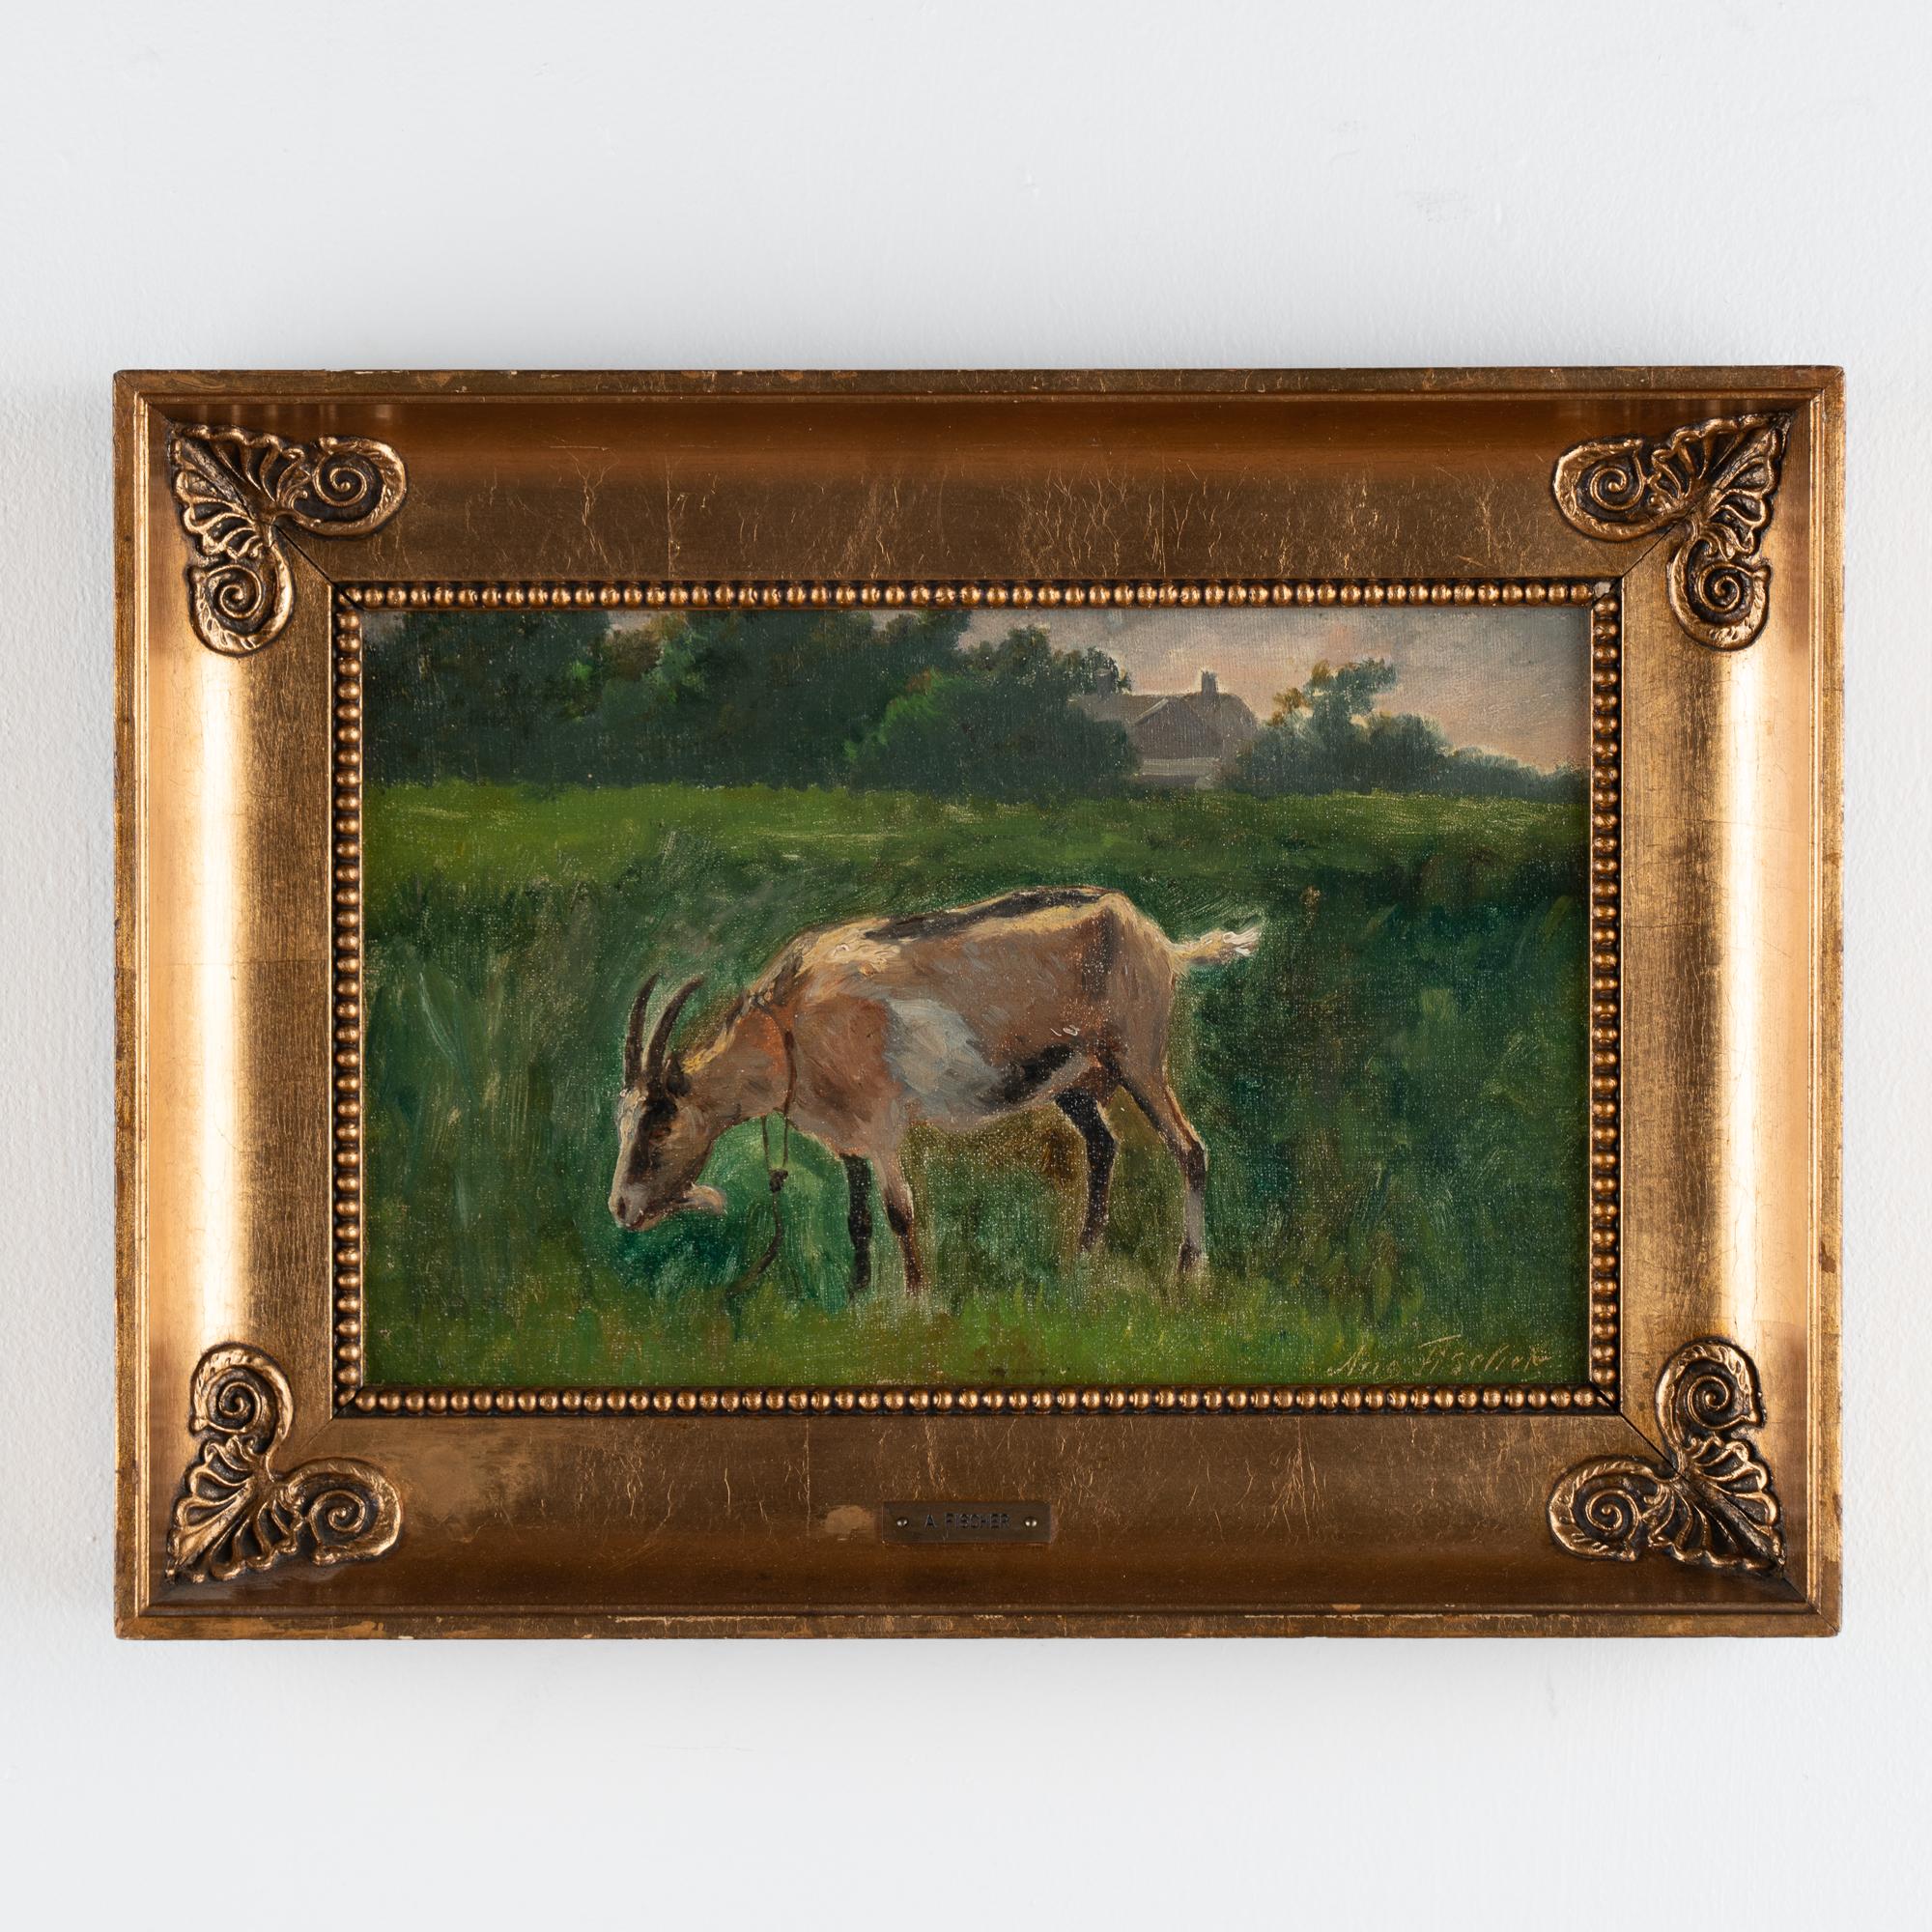 Petite peinture originale à l'huile sur toile représentant une chèvre broutant dans un champ, signée.
La toile est en bon état, compte tenu de son âge.
Johannes August Fischer était un peintre paysagiste danois, frère du célèbre Paul Fischer. En